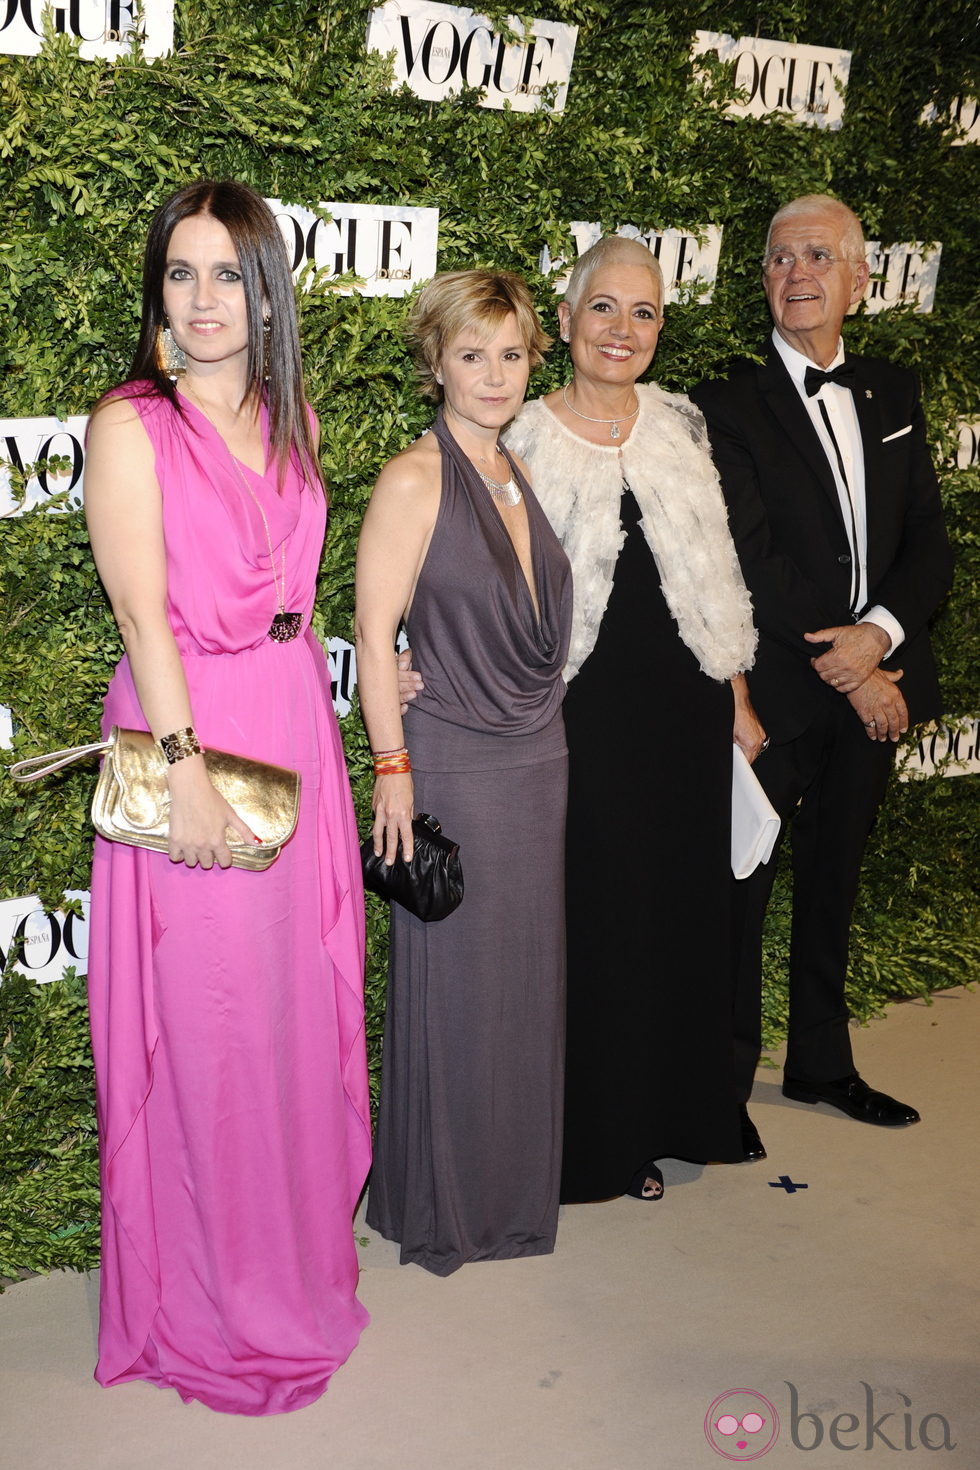 La Duquesa de Montoro junto a los Tous en los Premios Vogue Joyas 2011